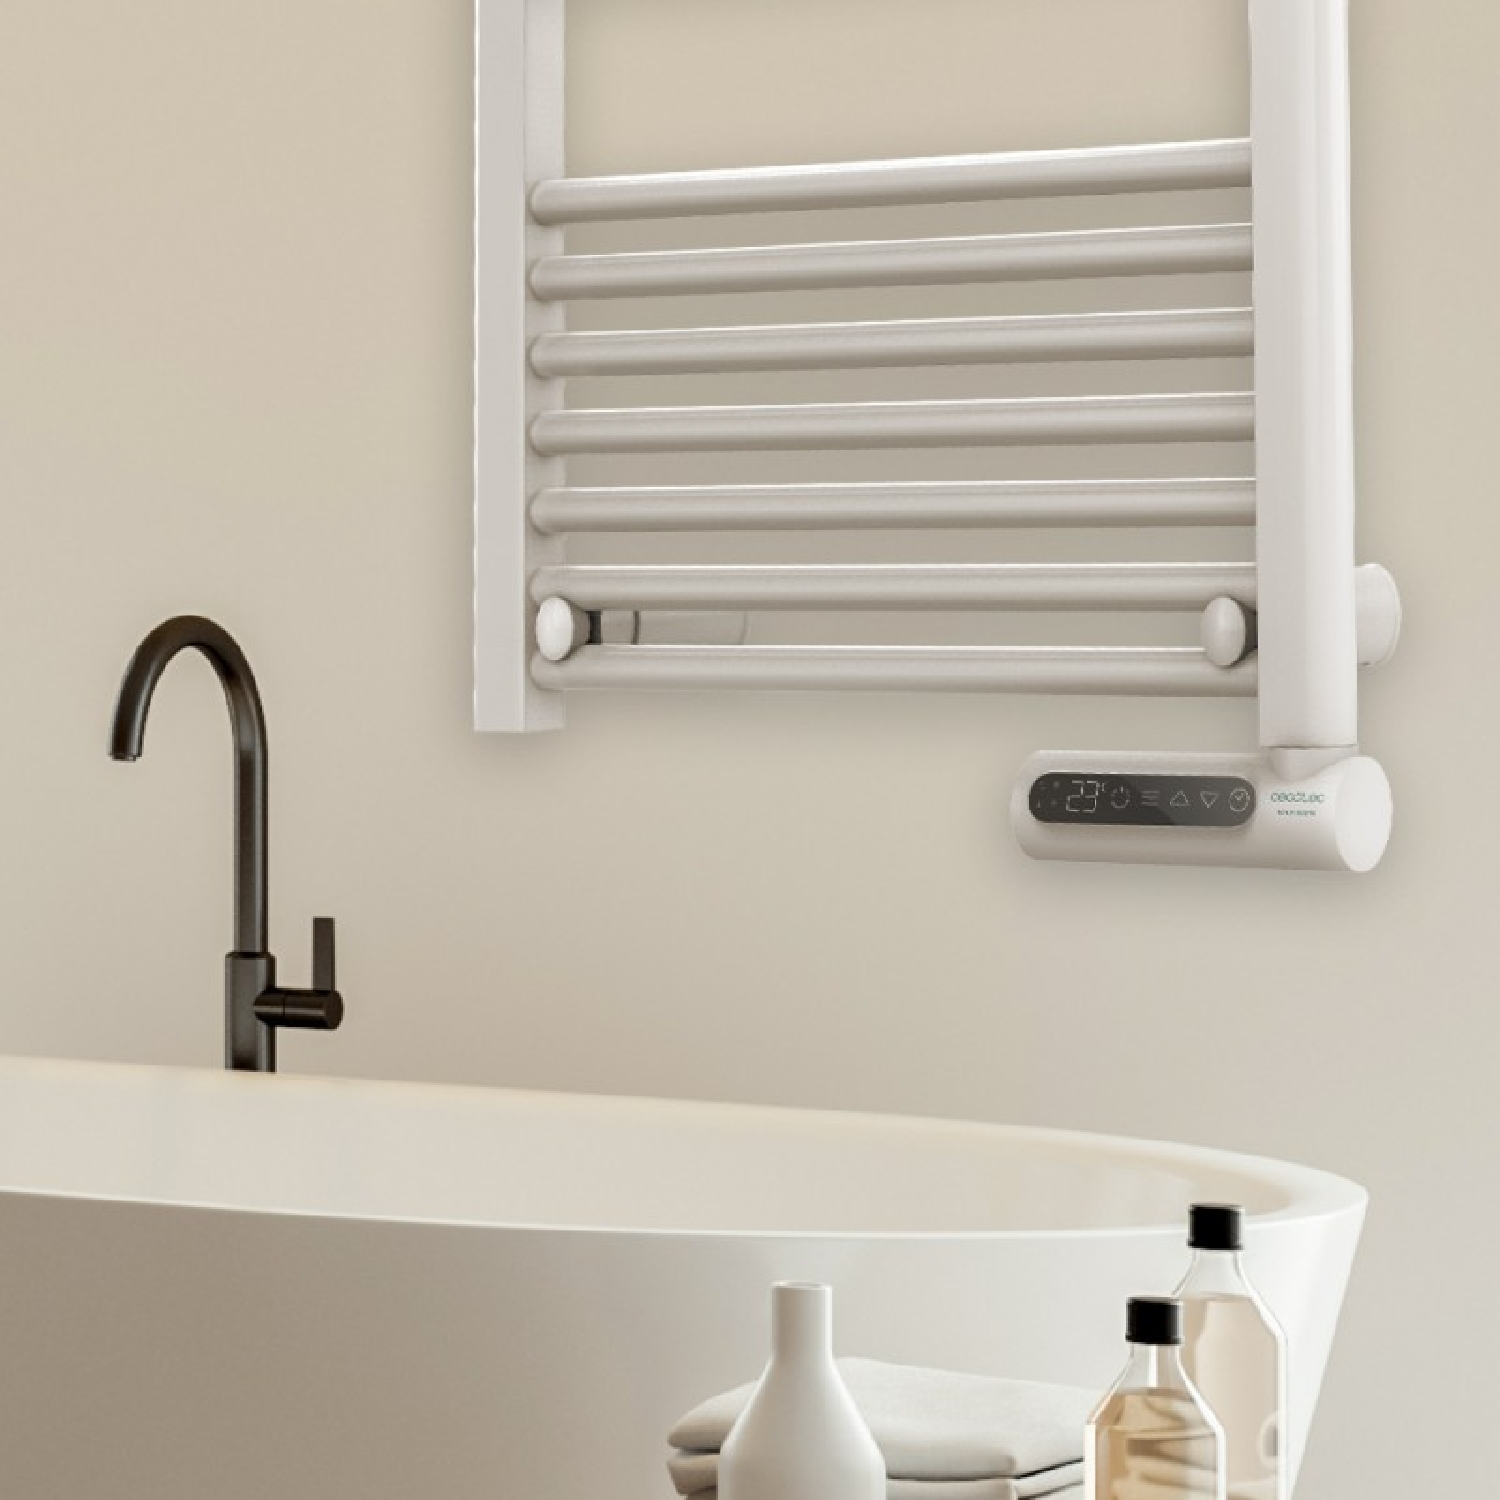 CECOTEC ReadyWarm 9200 Smart Towel White fan heater